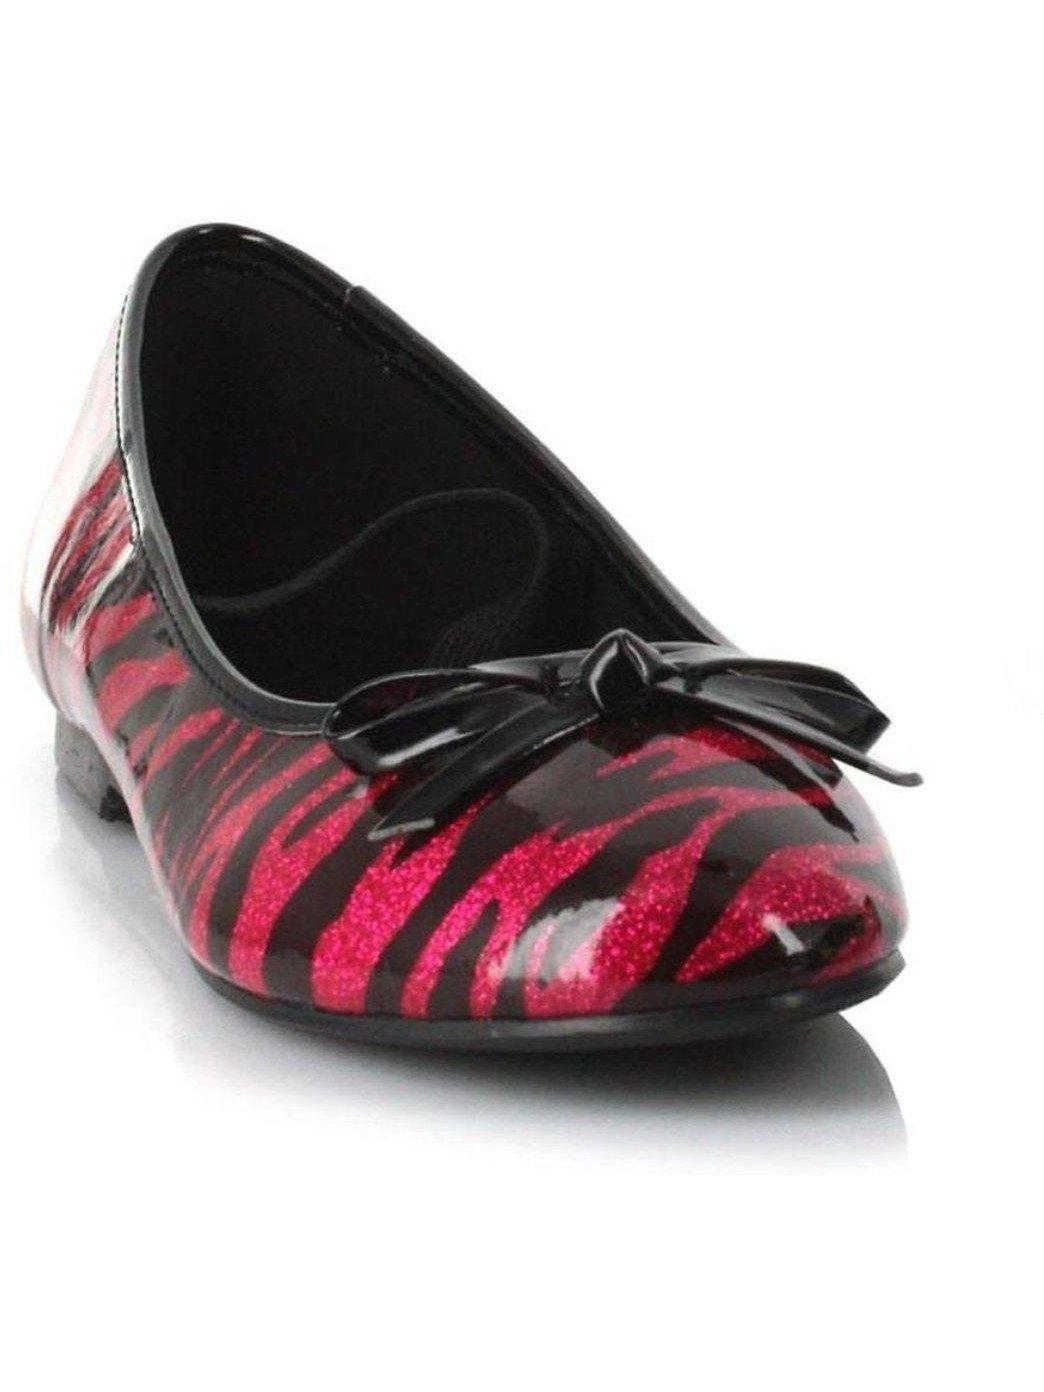 Ellie boty E-013-Zebra 0 Heel Zebra baletní pantofle dětské Ellie boty